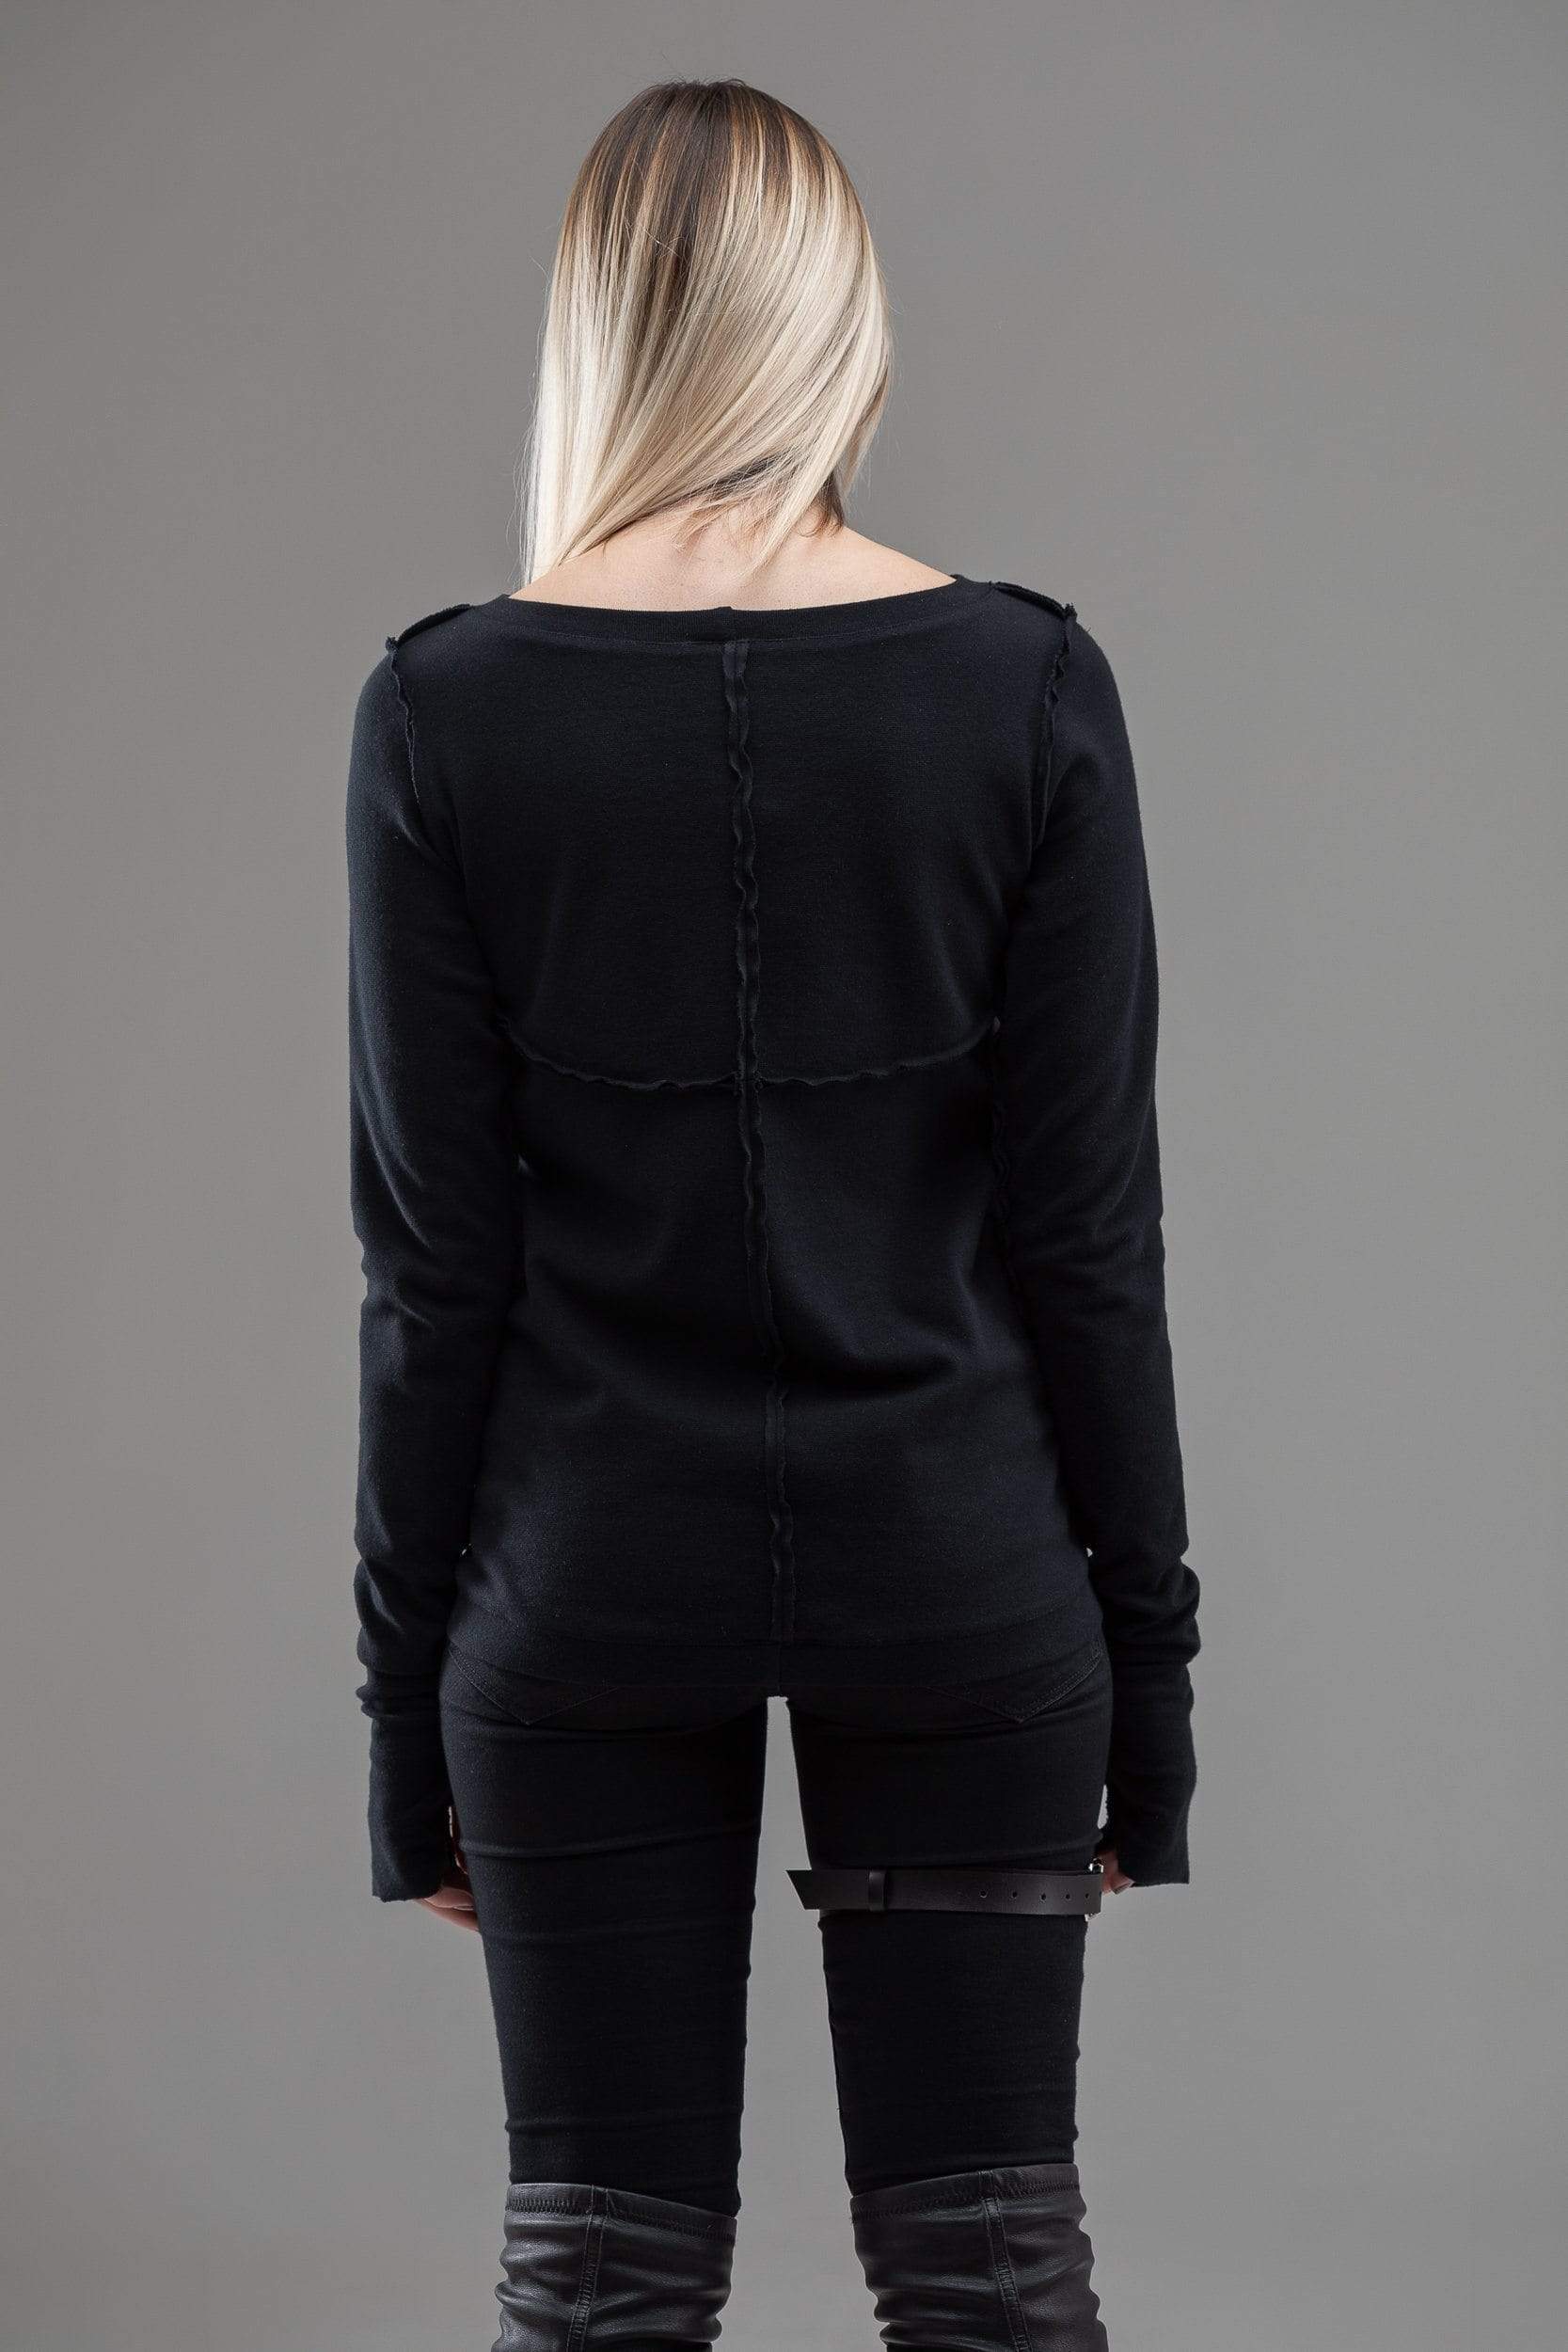 MDNT45 Sweaters, Tunics & Tops Black gothic jumper